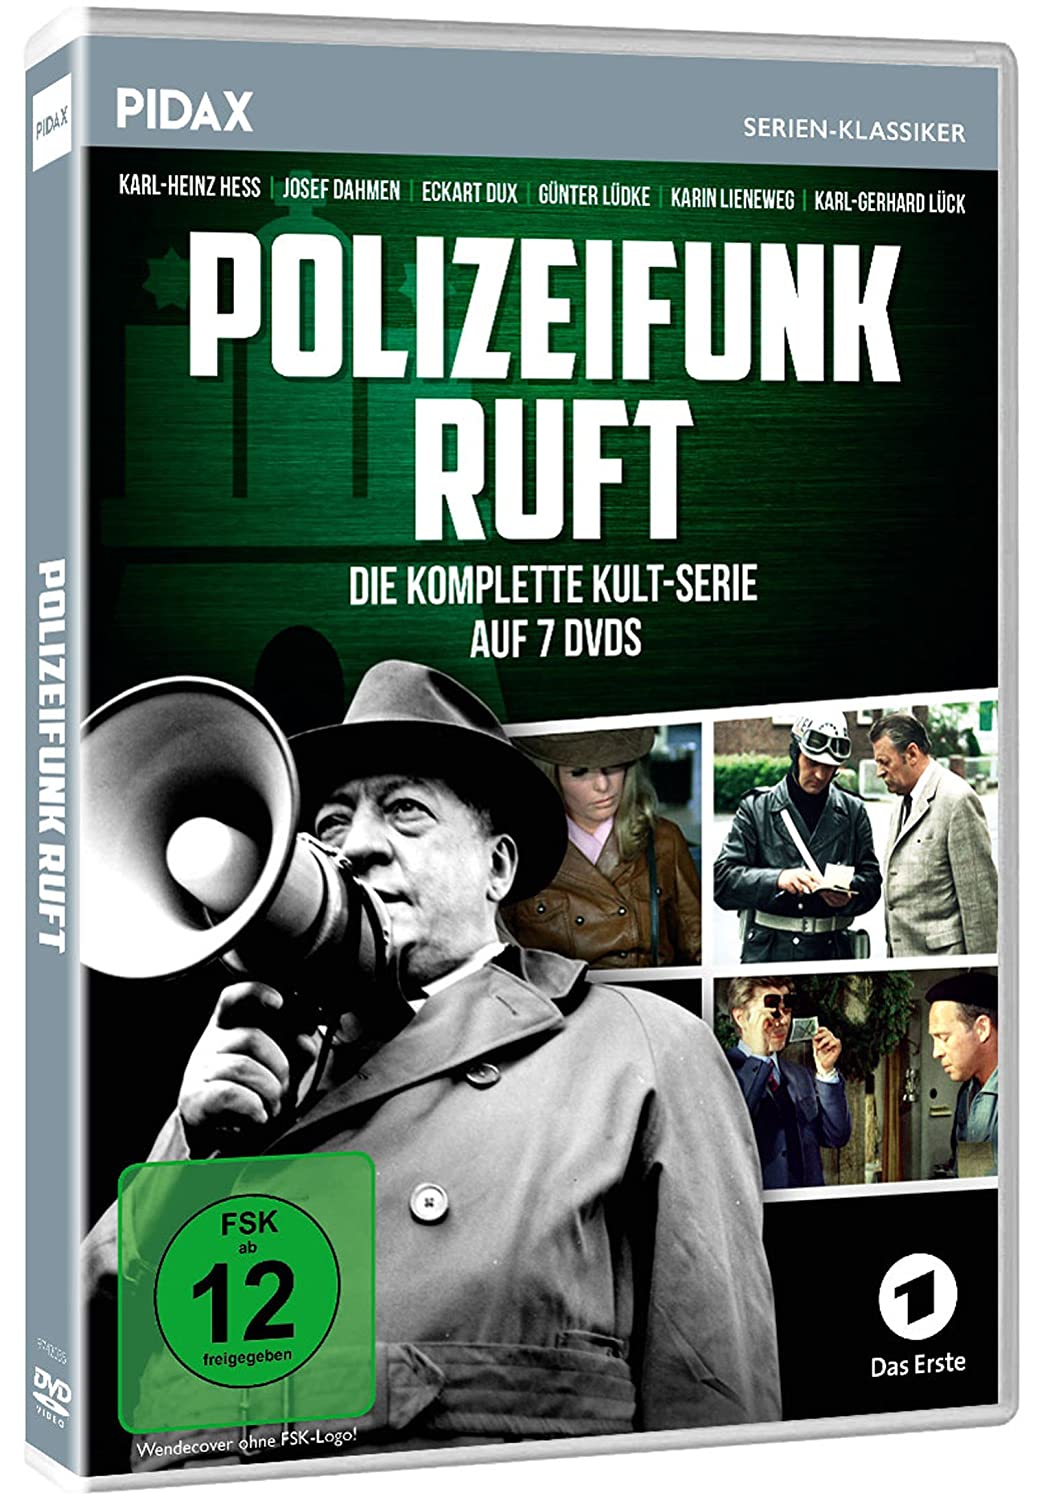 Polizeifunk ruft - Die komplette Kultserie auf 7 DVDs